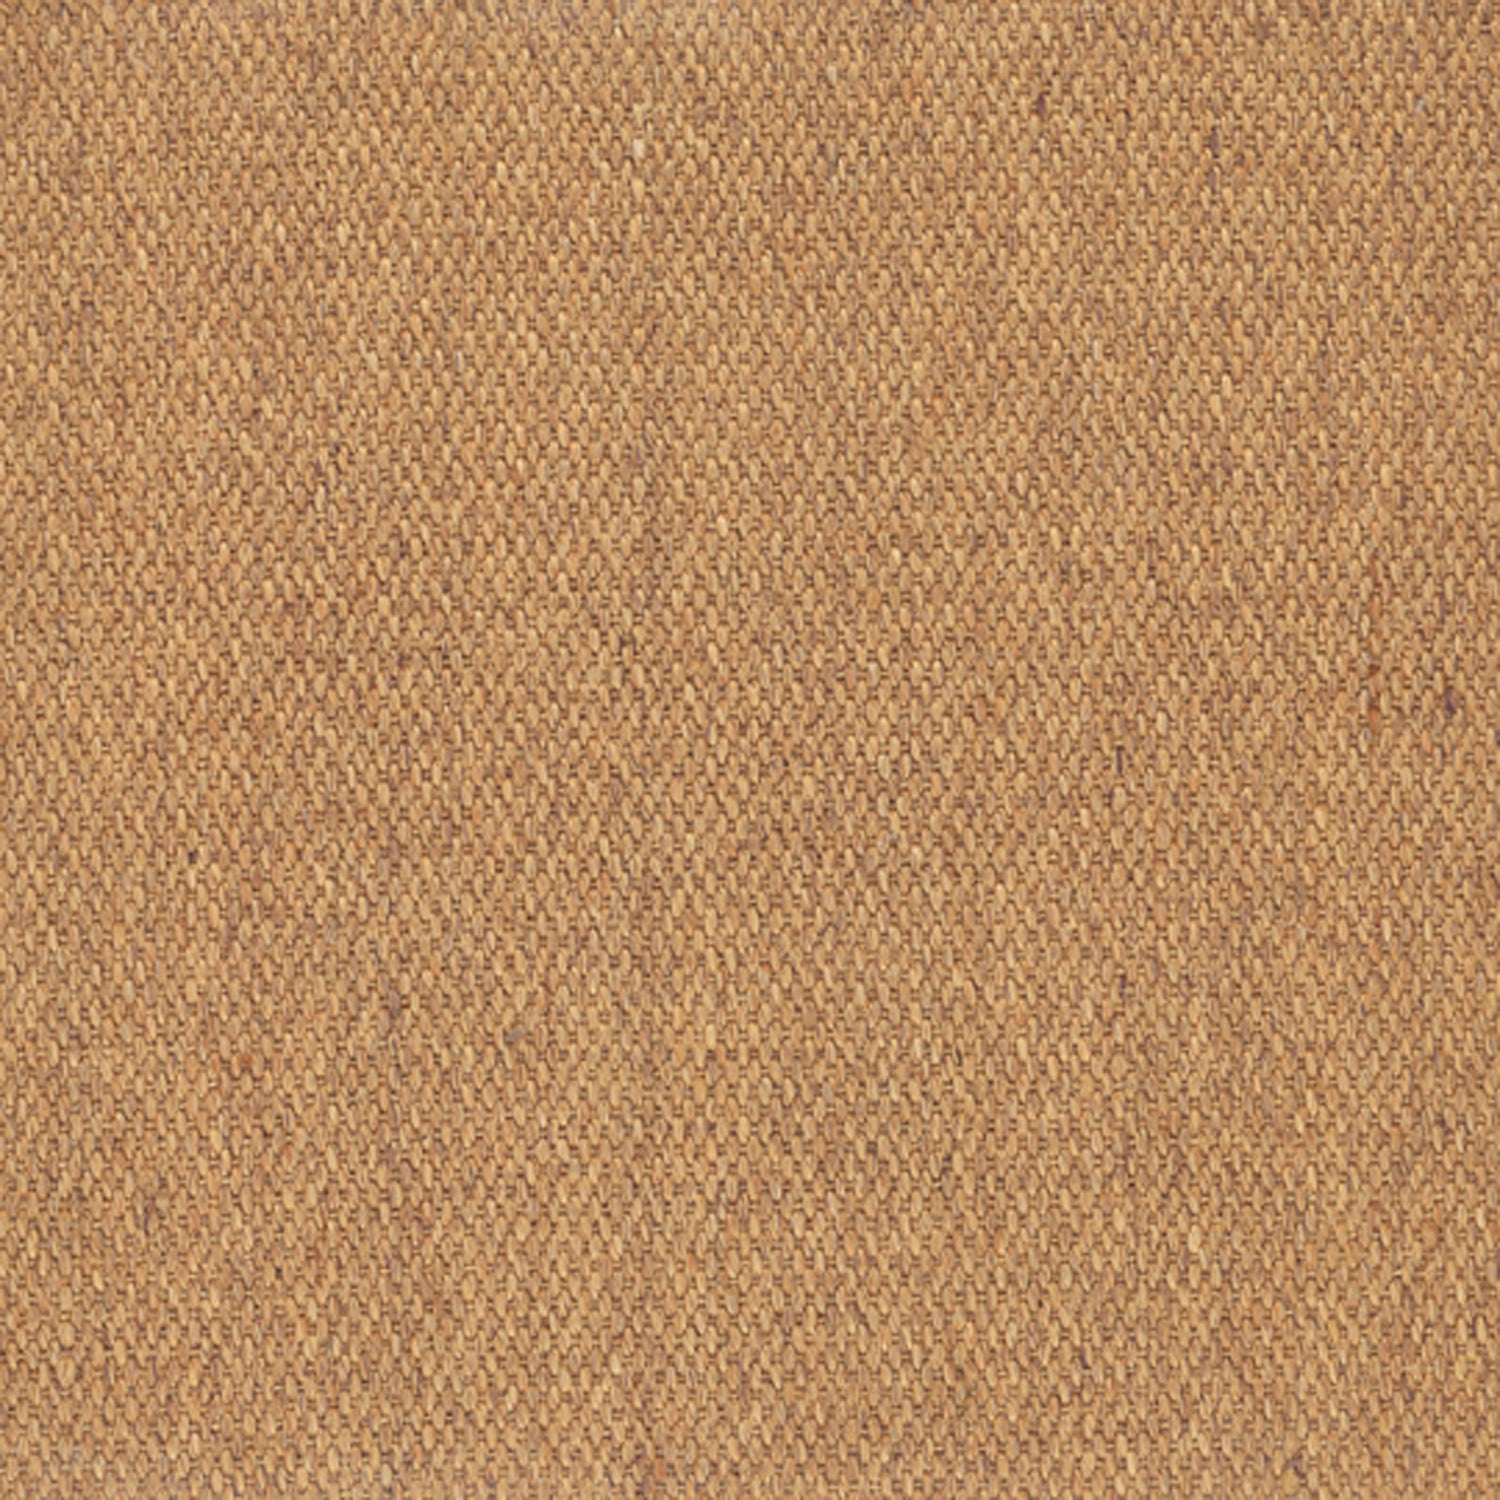 Sisal broadloom carpet swatch in a flat weave in tan.